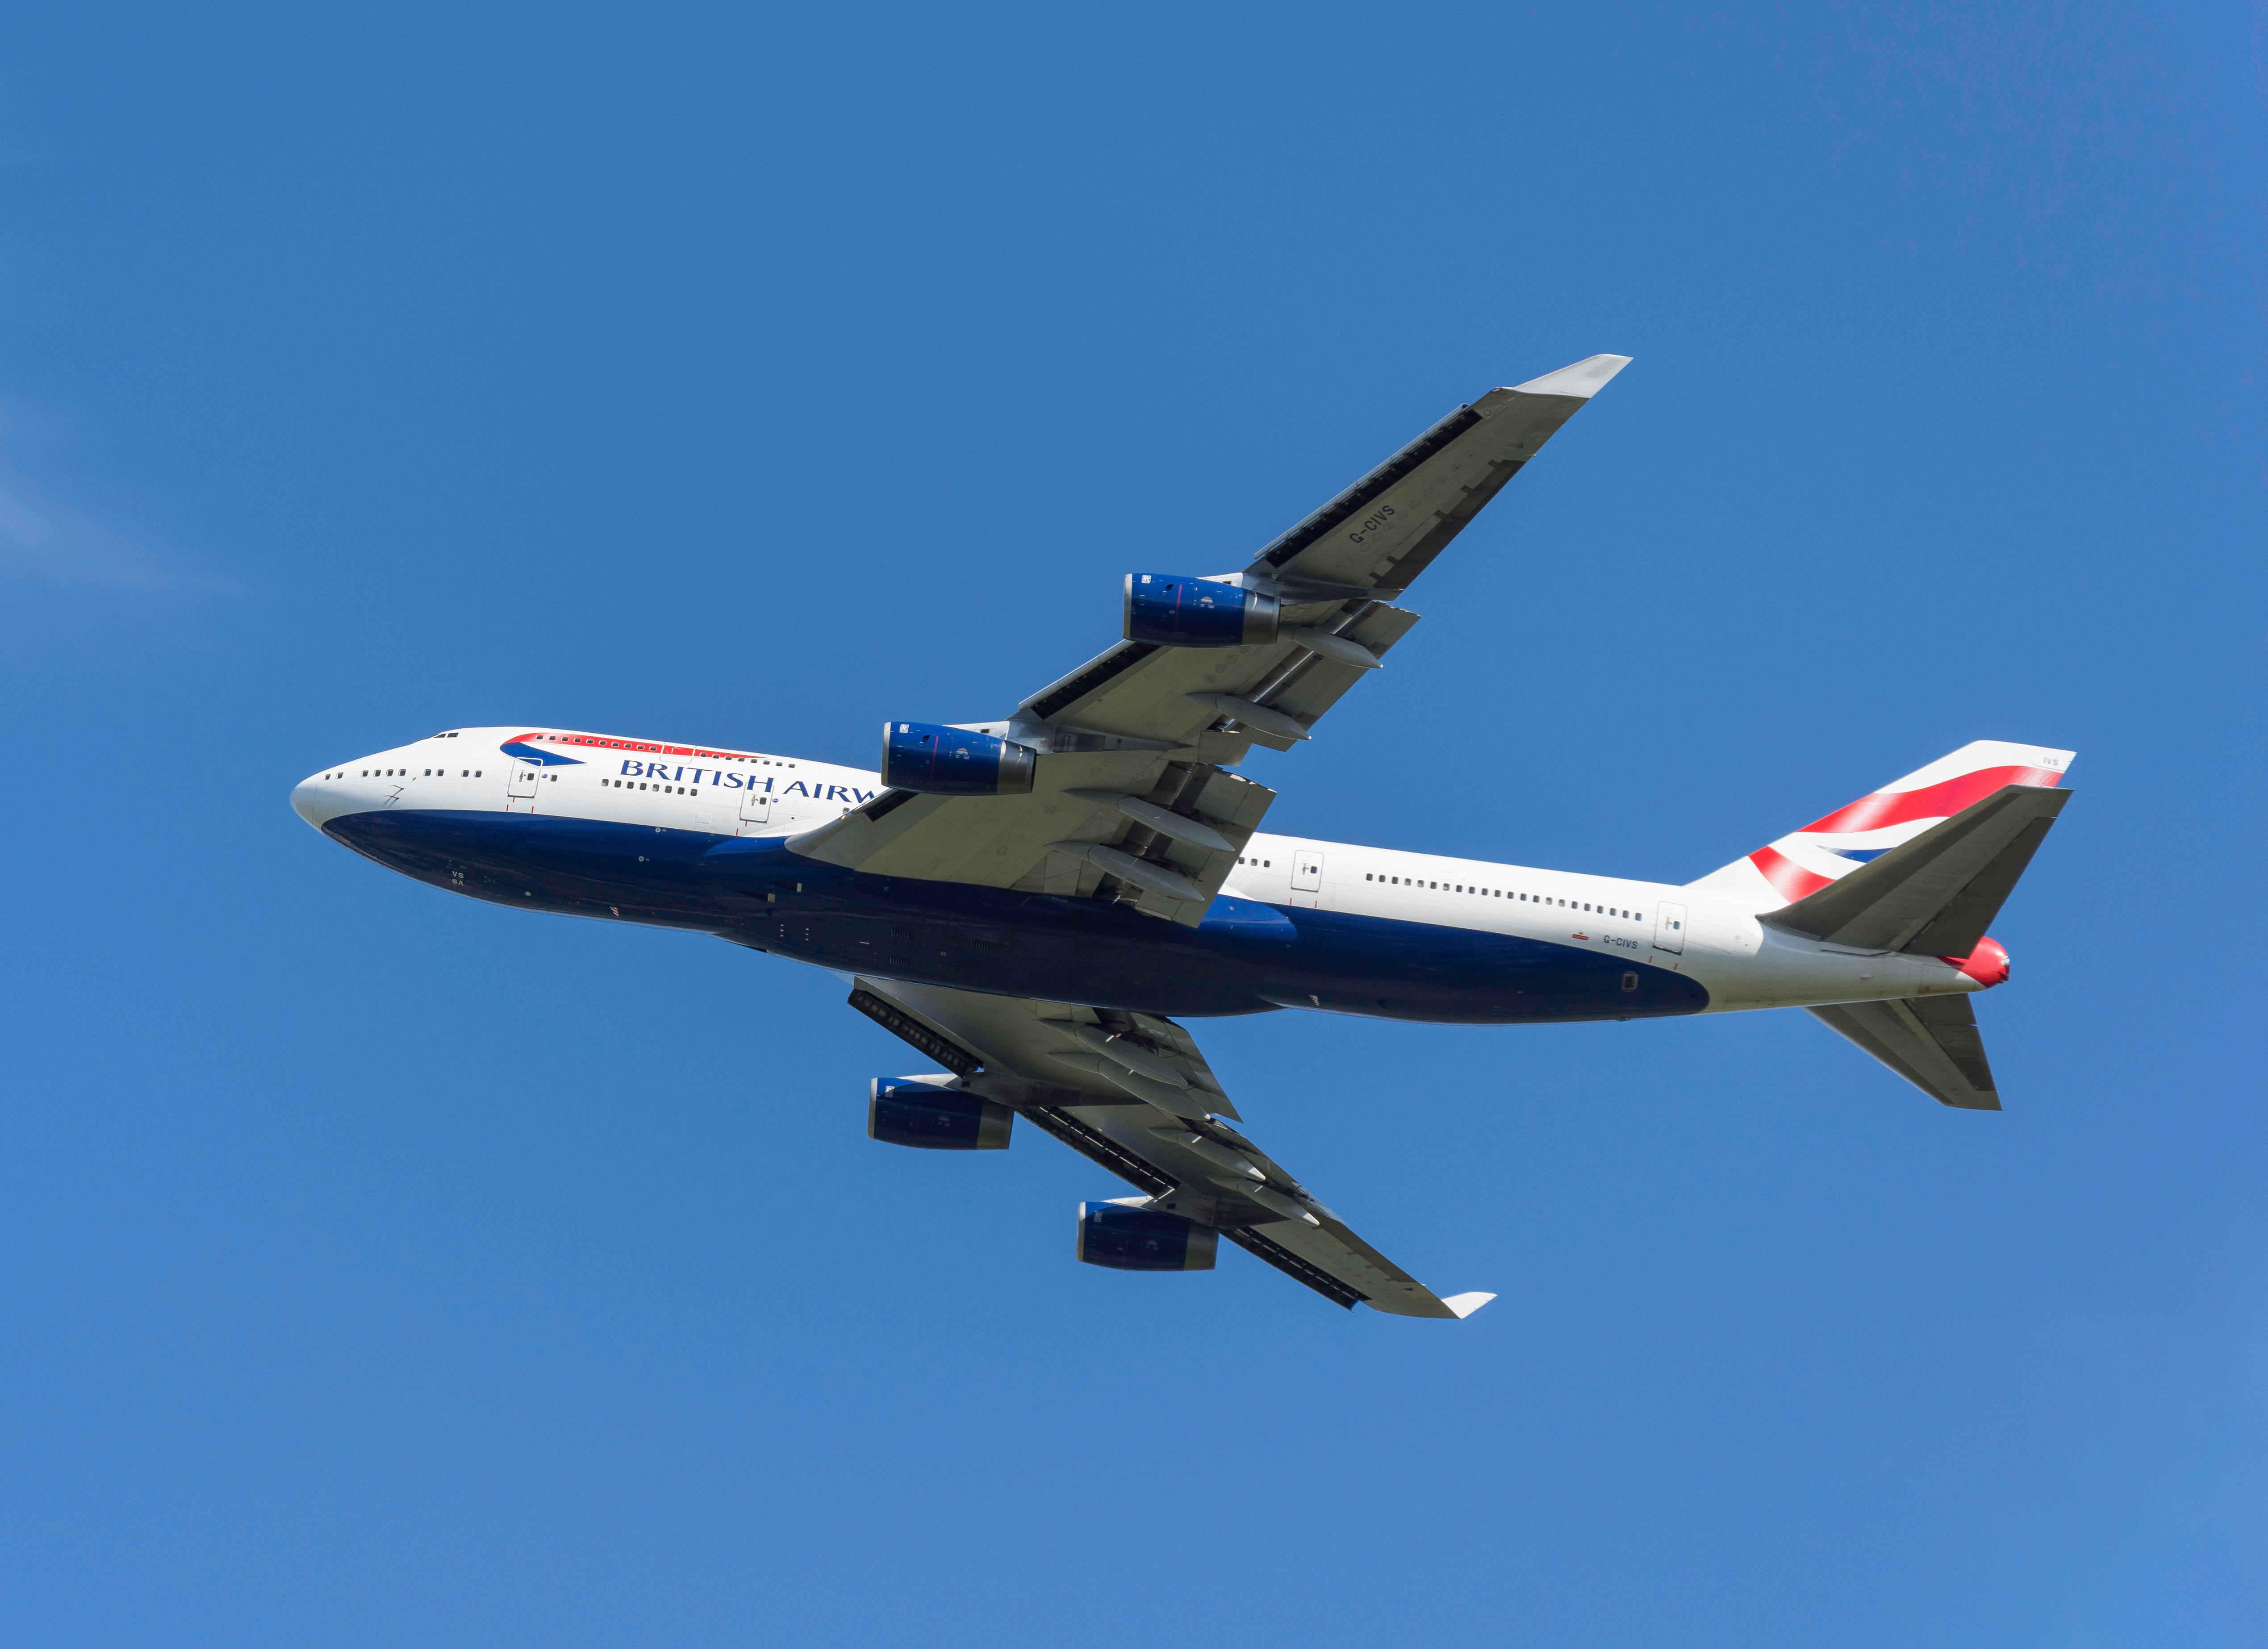 A British Airways Boeing 747-436 taking off from Heathrow